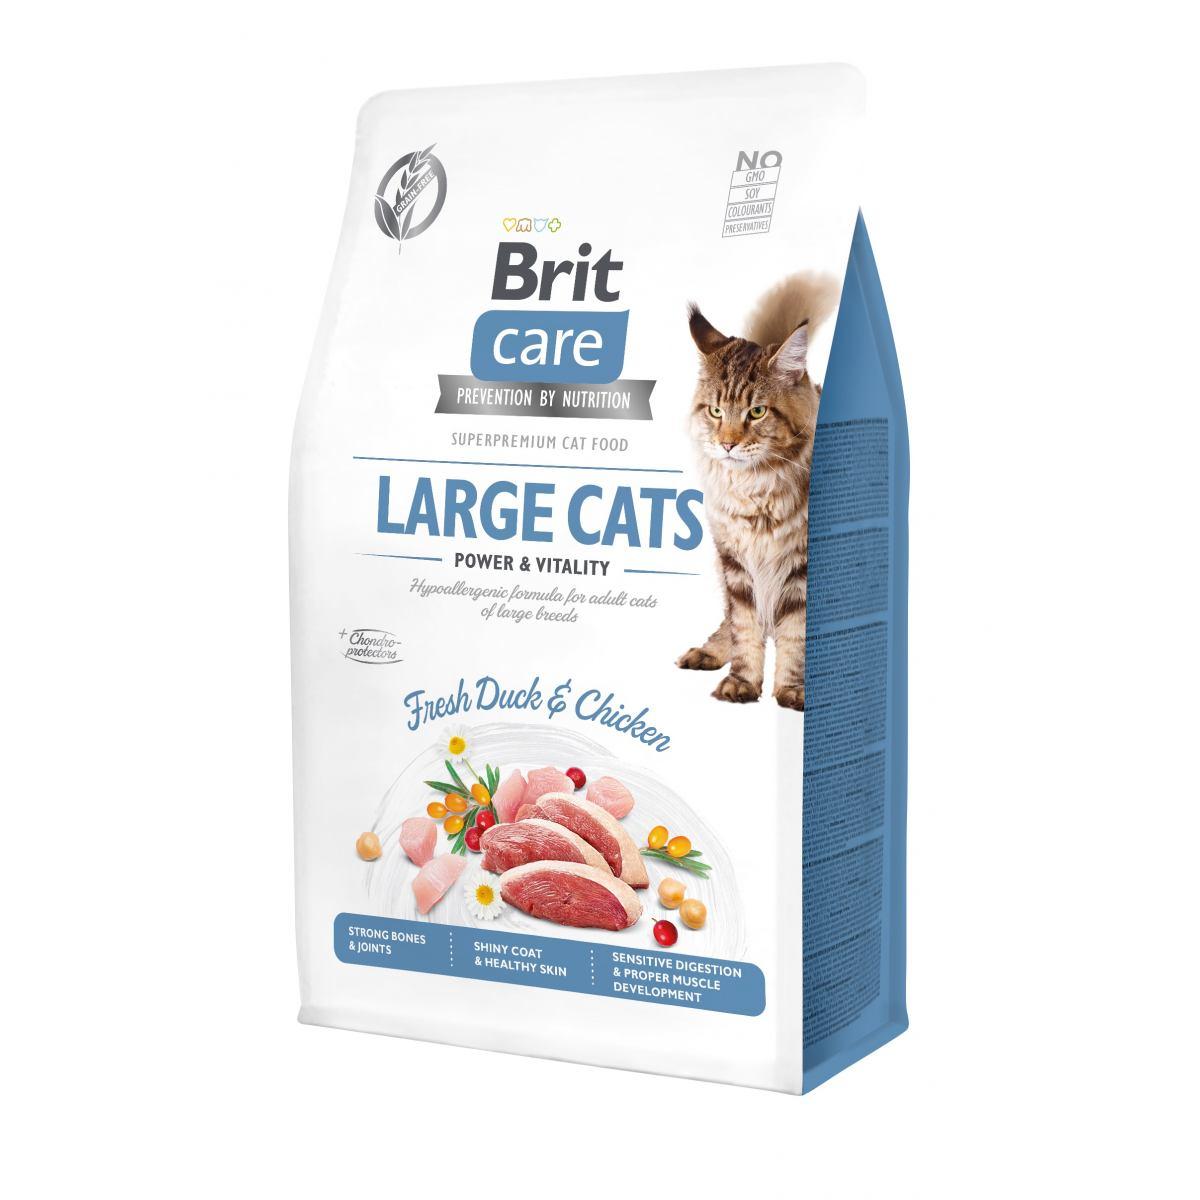 Сухий корм для котів великих порід Brit Care Cat GF Large cats Power & Vitality, 7 кг